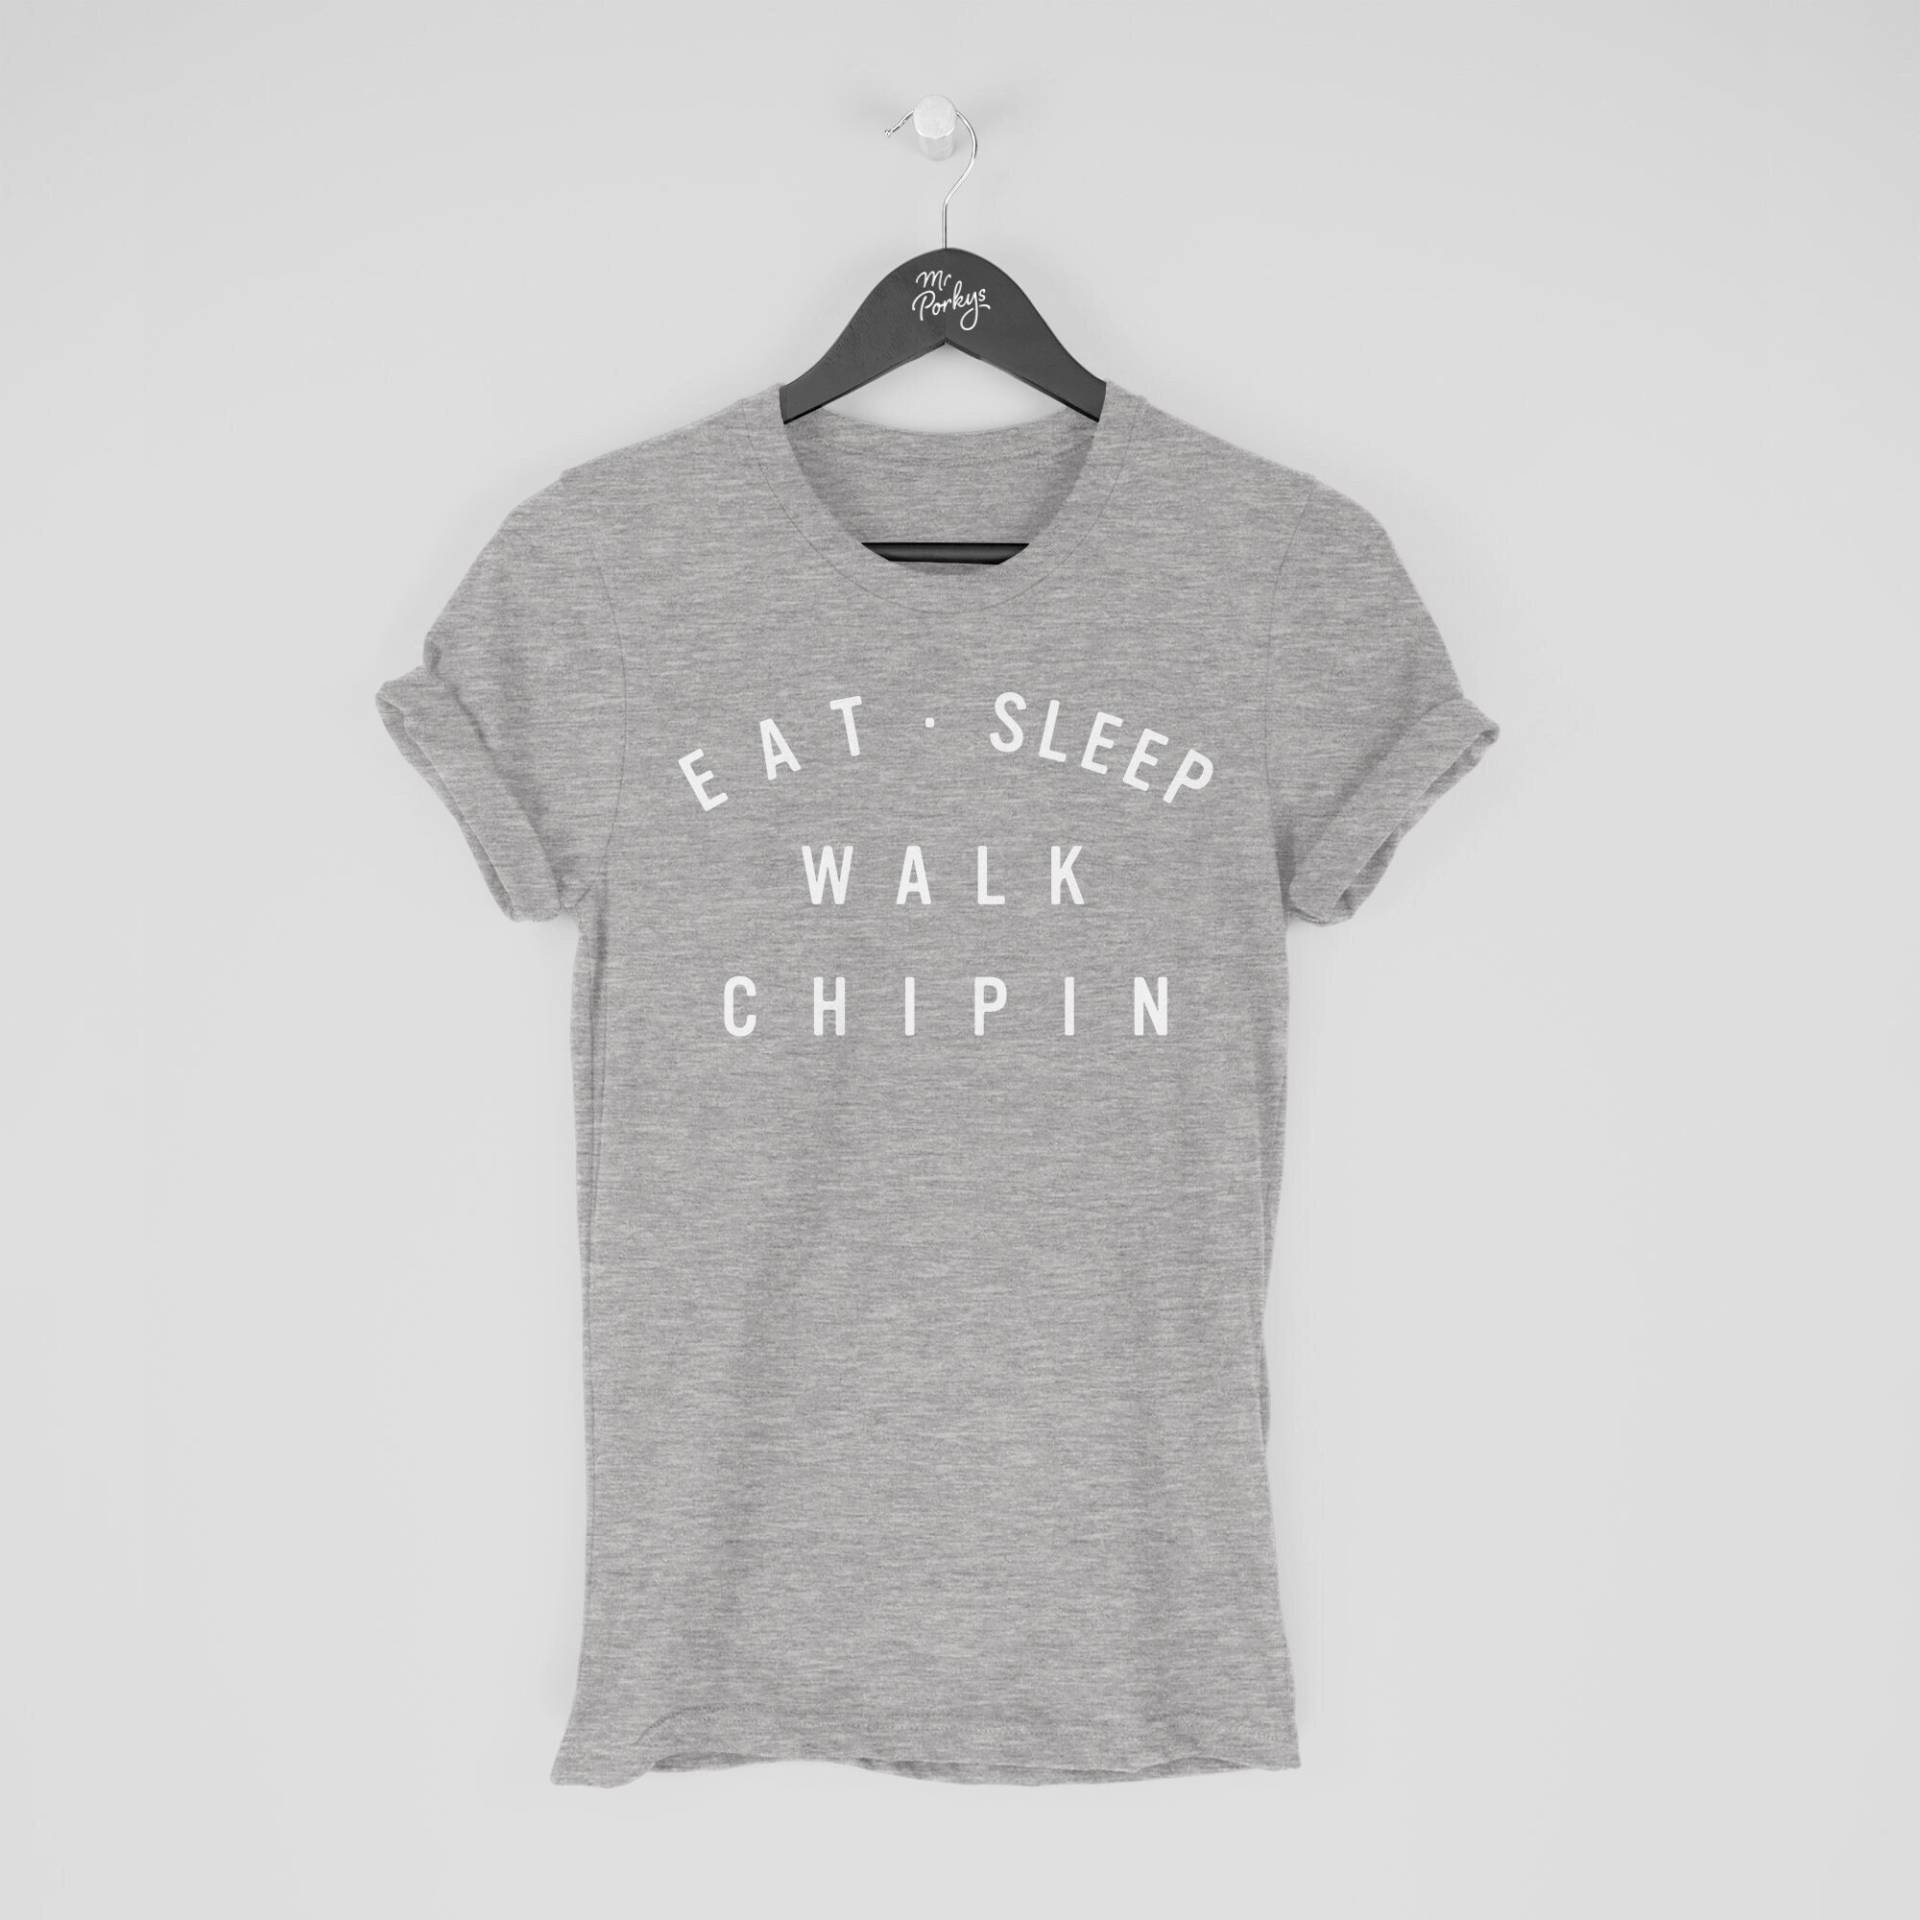 Chipin Shirt, Eat Sleep Walk T-Shirt, Geschenk Für Besitzer von MrPorkysGiftShop